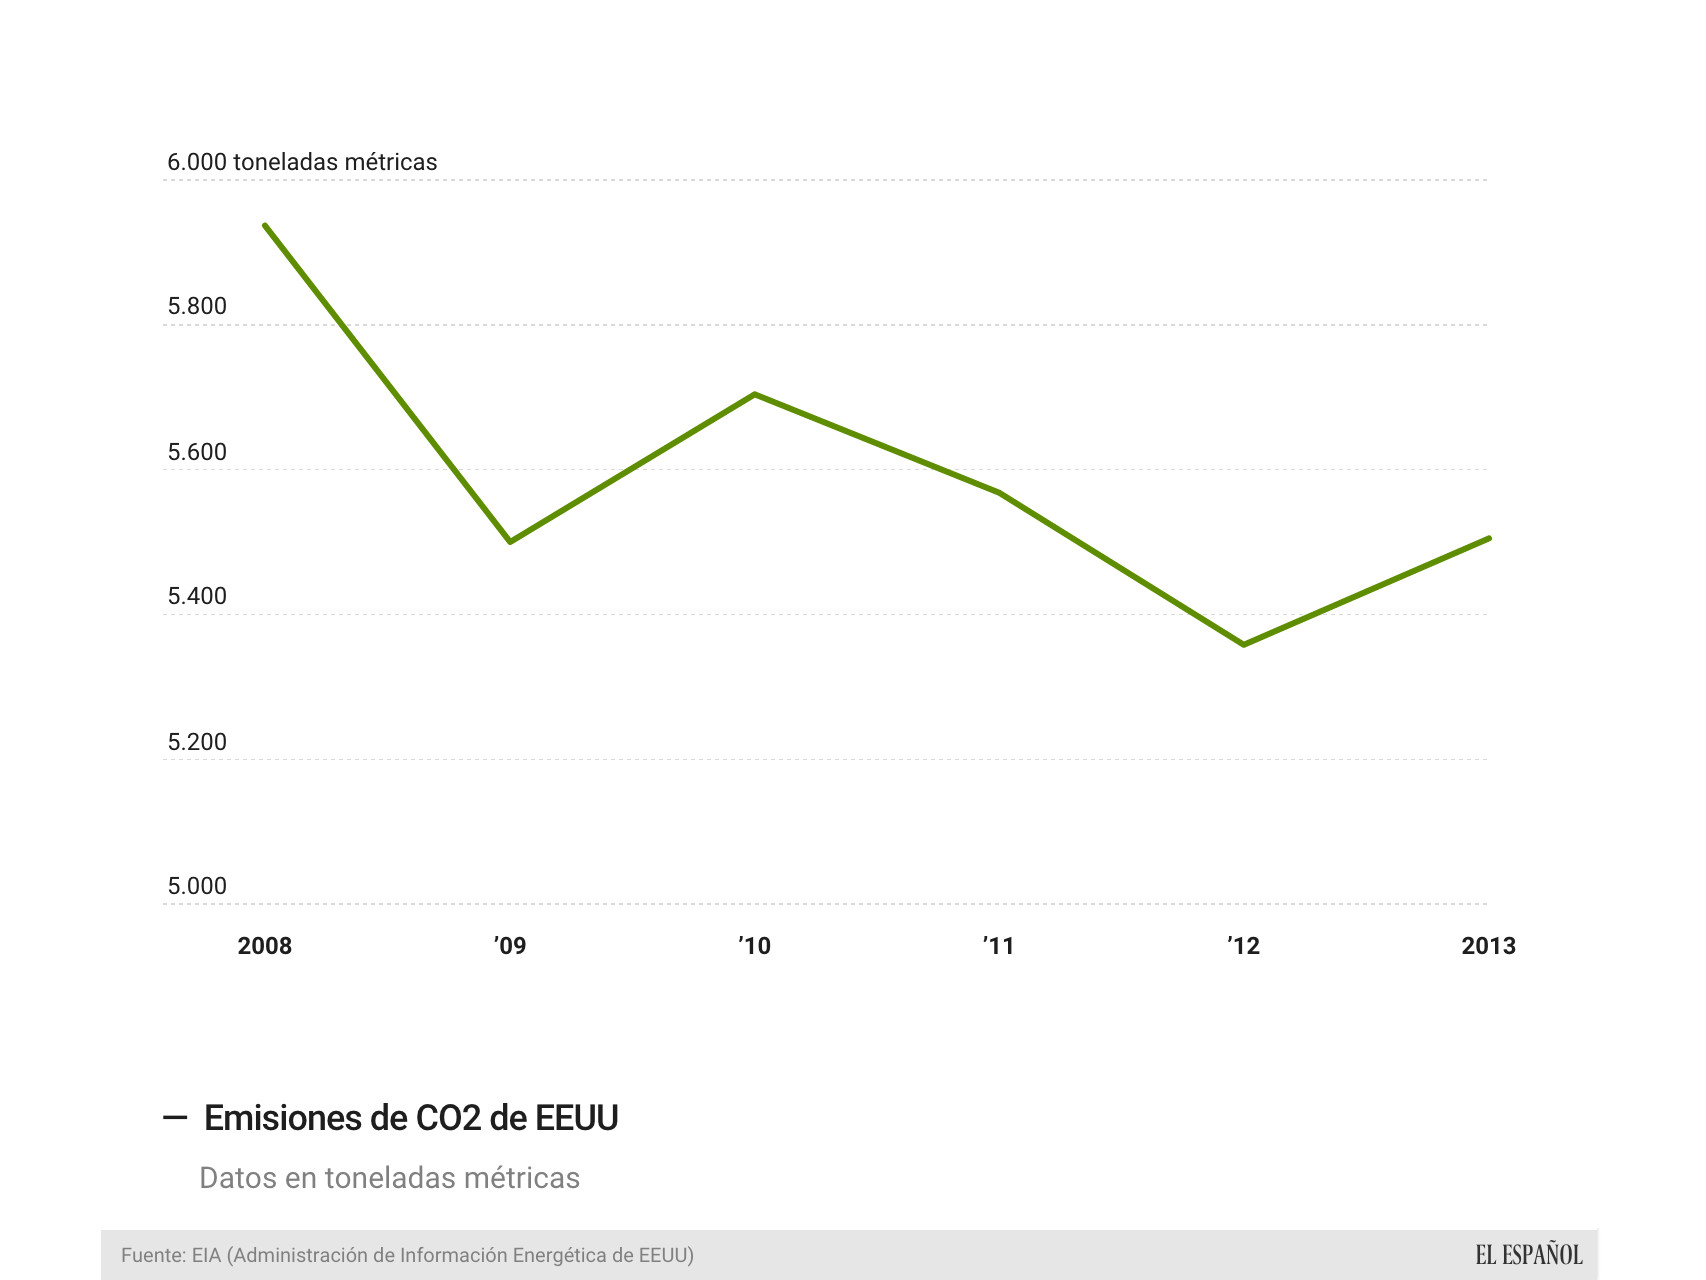 Las emisiones bajaron durante la crisis en EEUU.